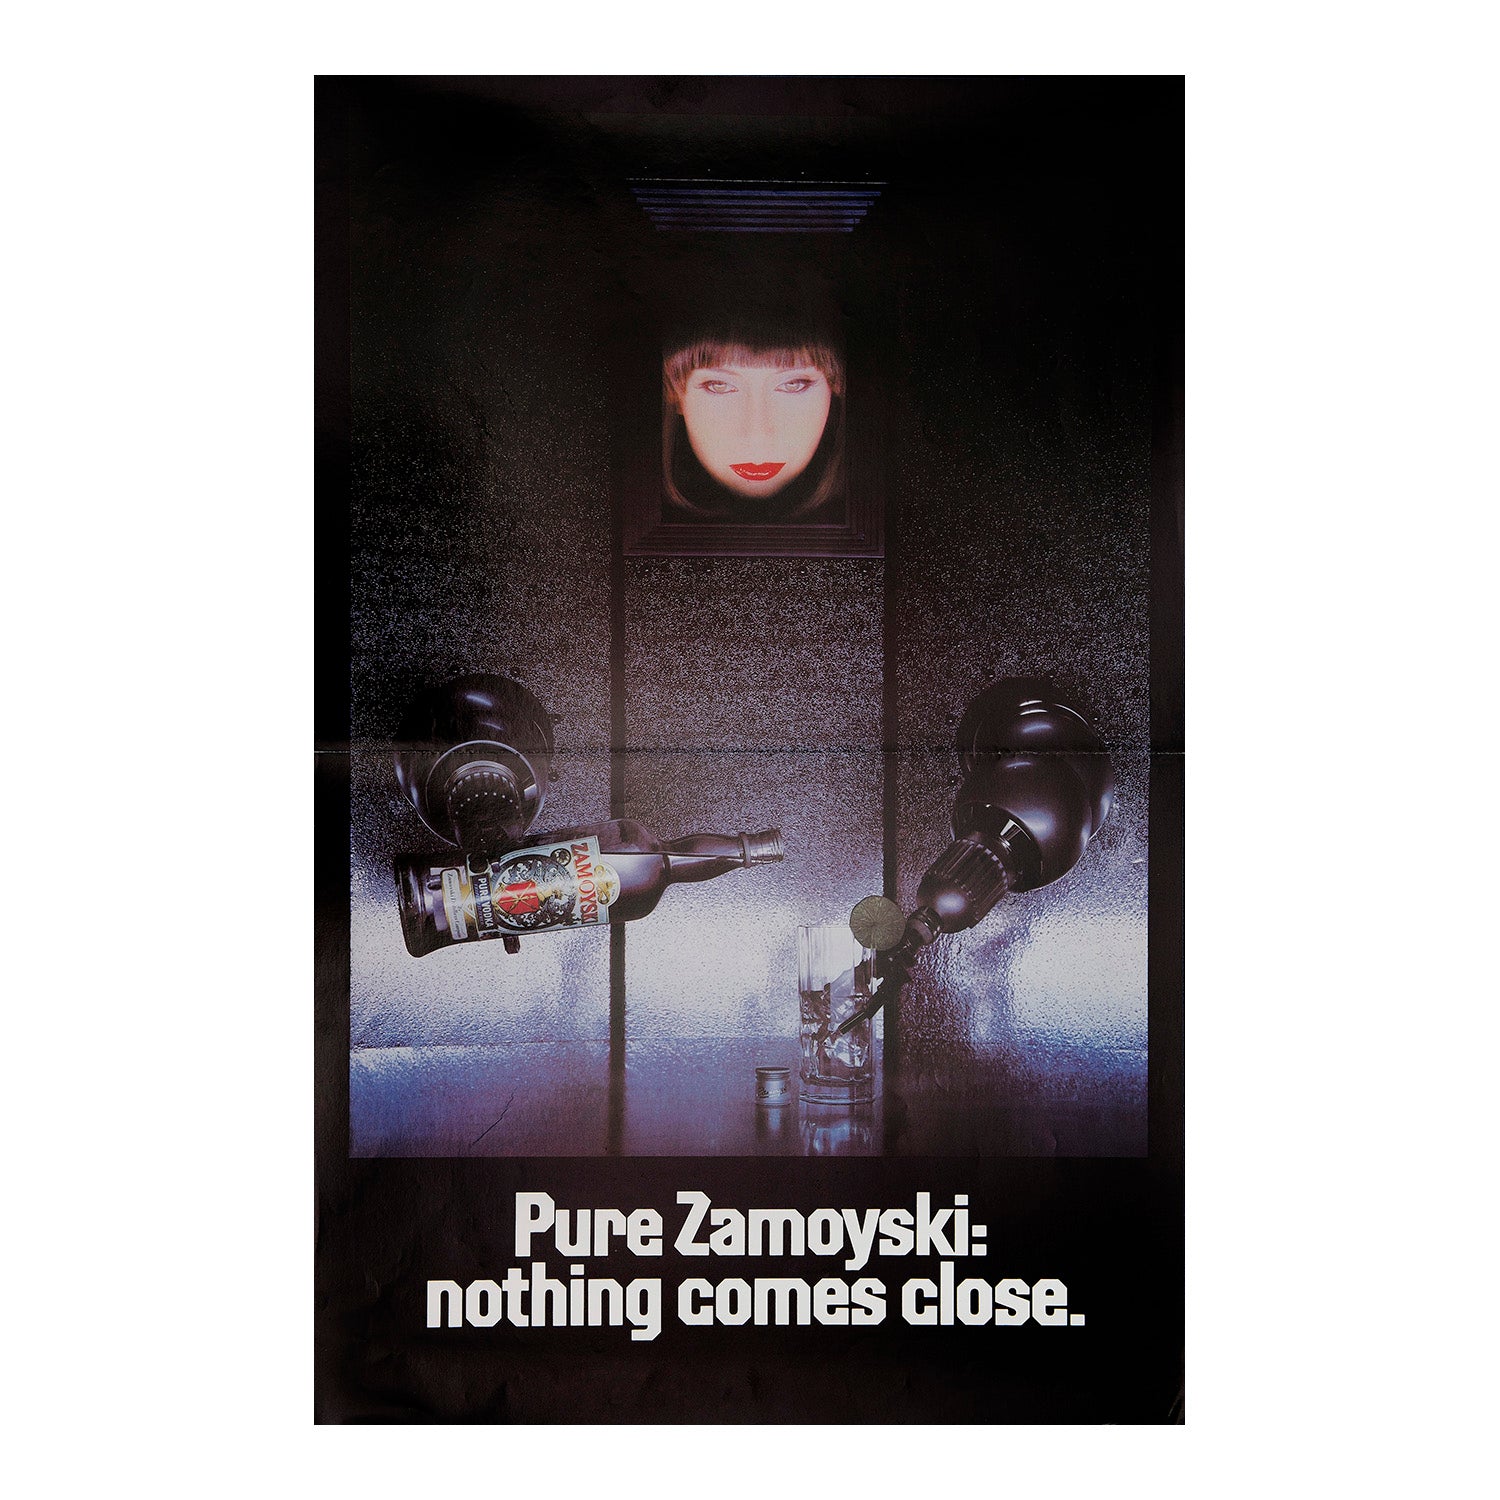 Pure Zamoyski. Nothing comes close